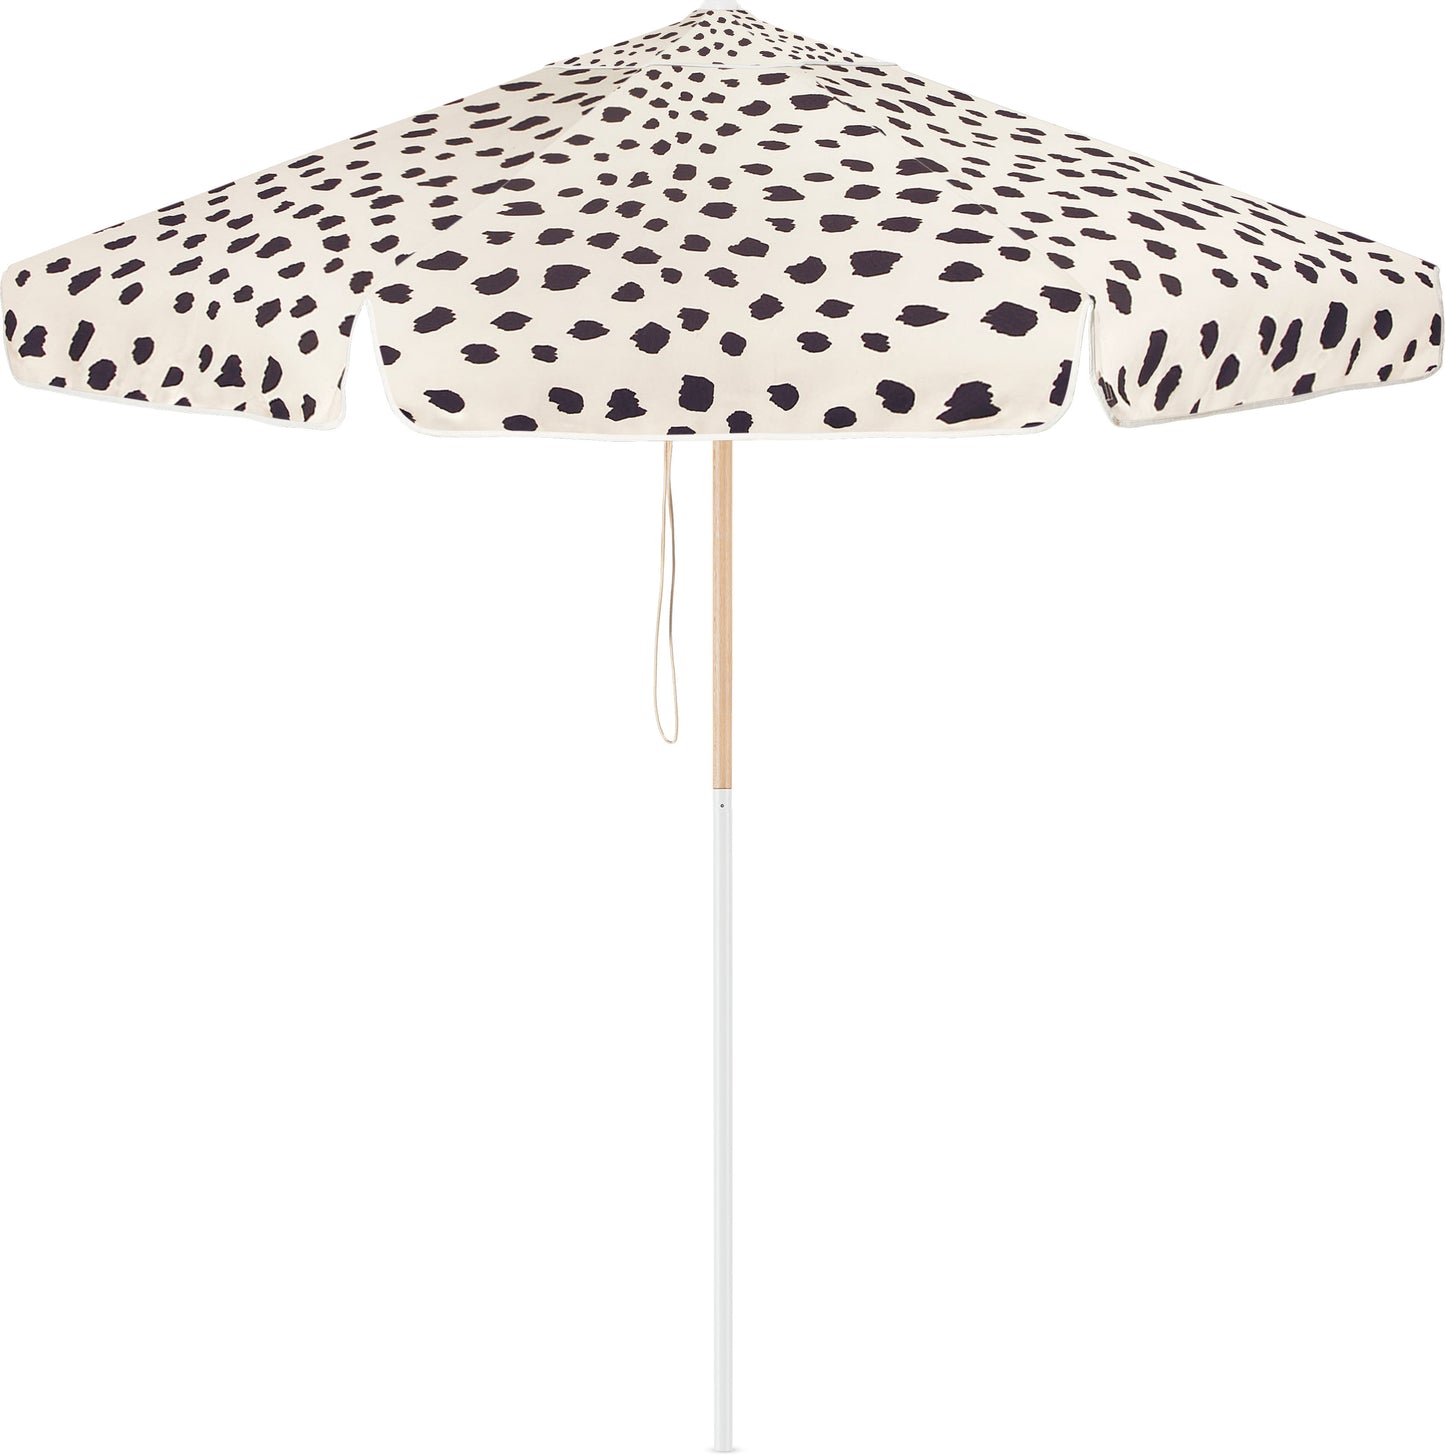 Black Sands Market Umbrella